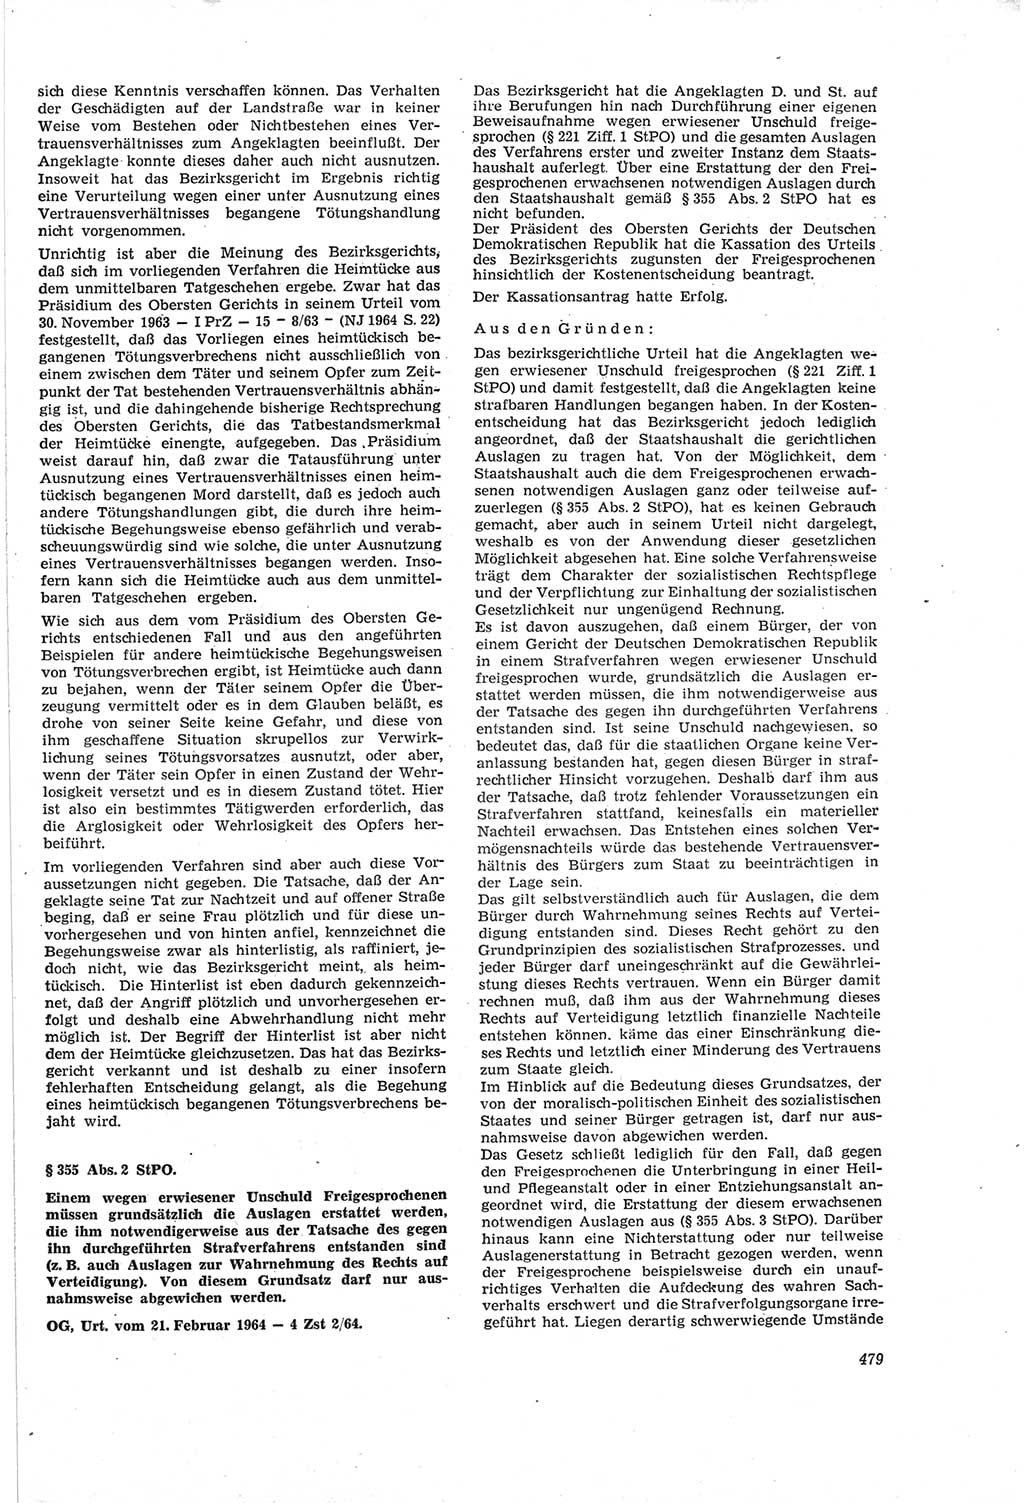 Neue Justiz (NJ), Zeitschrift für Recht und Rechtswissenschaft [Deutsche Demokratische Republik (DDR)], 18. Jahrgang 1964, Seite 479 (NJ DDR 1964, S. 479)